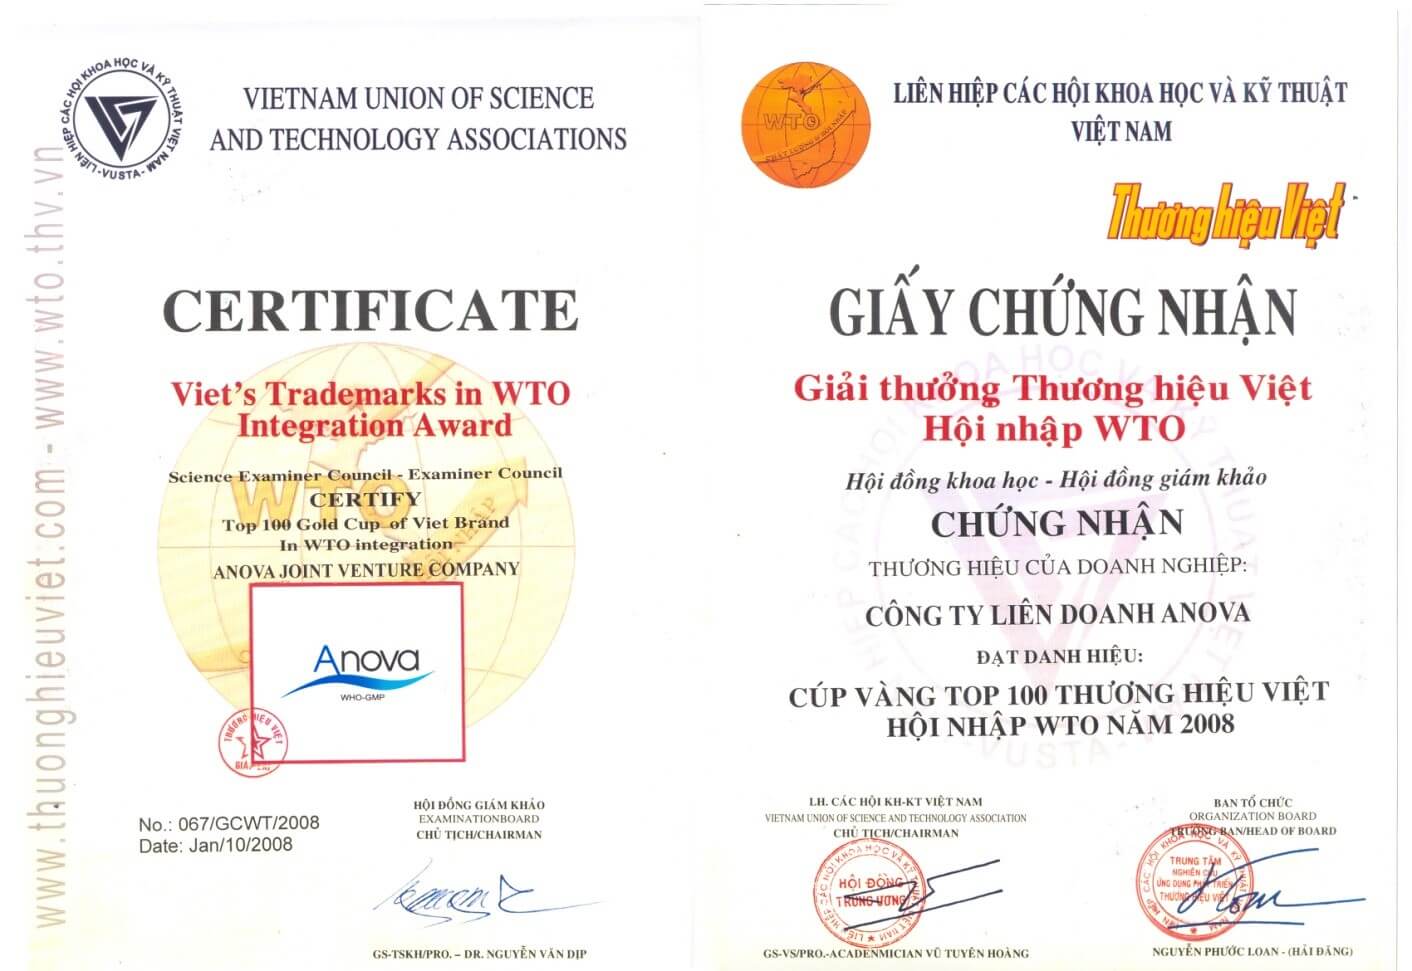 Certificate of "Golden Cup - Top 100 Vietnamese brands in WTO integration in 2008"